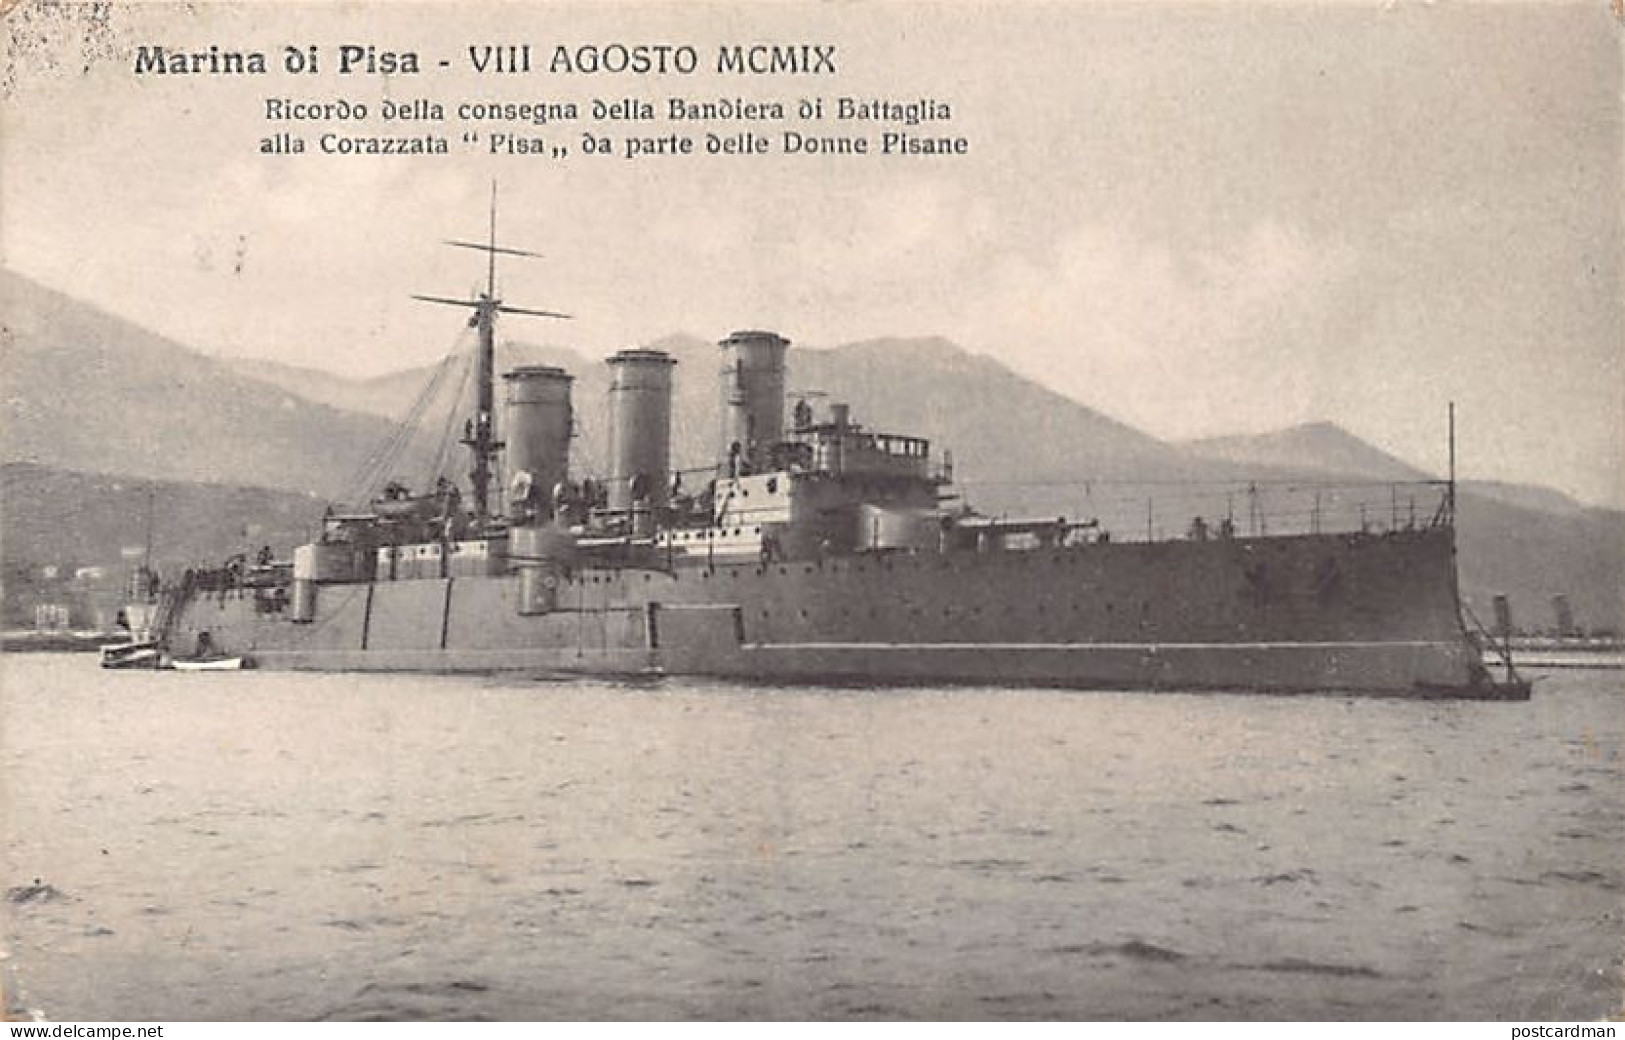 MARINA DI PISA - Consegna Della Bandiera Di Battaglia Alla Corazzata Pisa Da Parte Delle Donne Pisane - 8 Agosto 1909 - Pisa